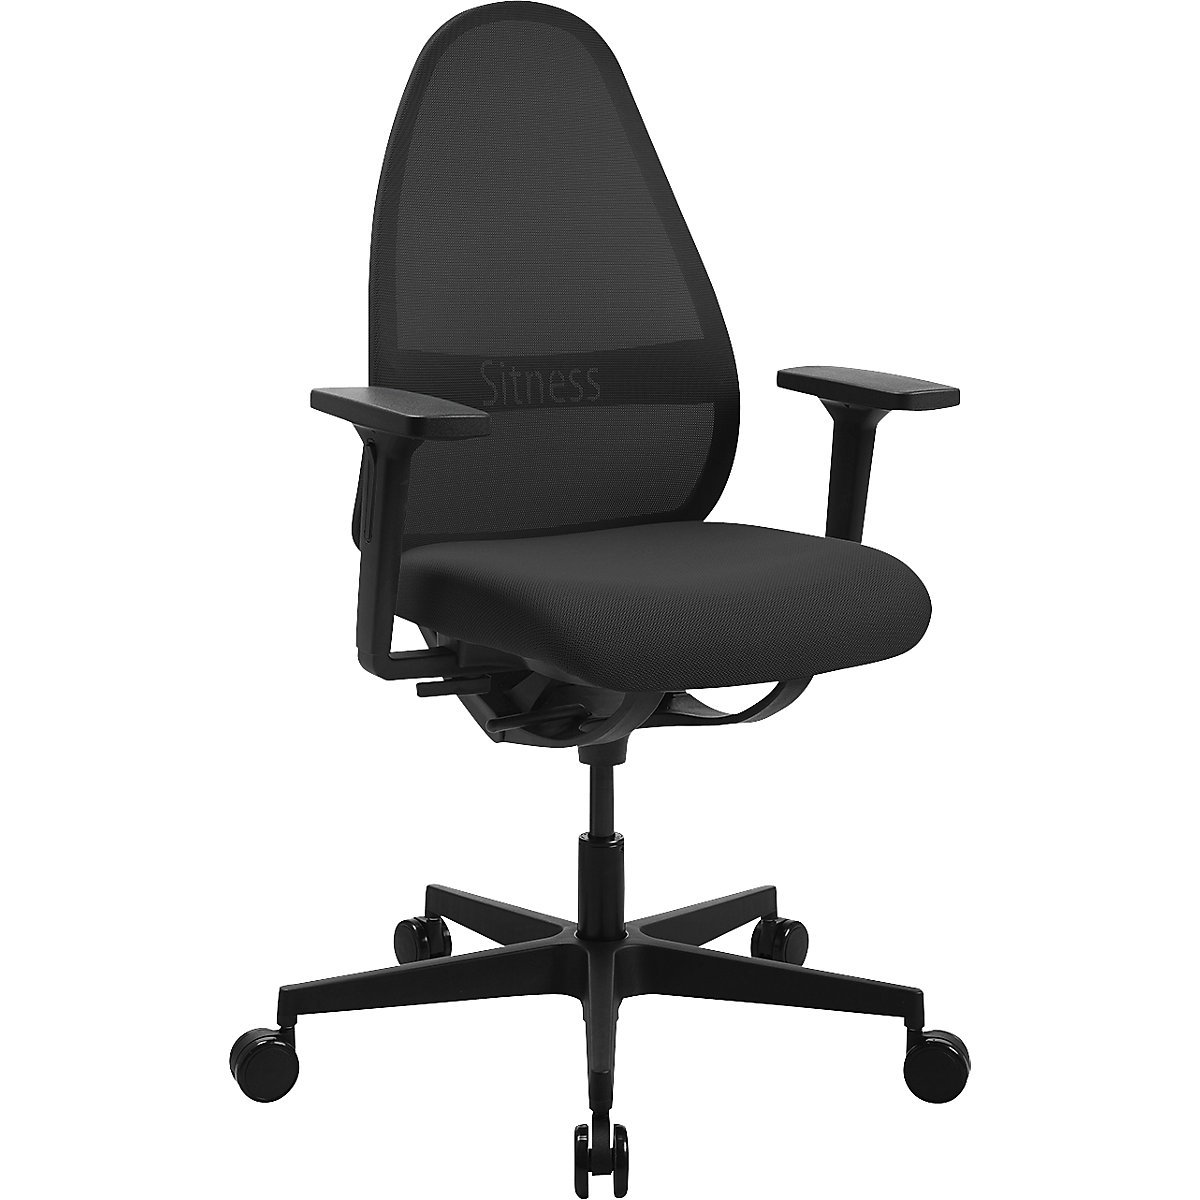 SOFT SITNESS ART office swivel chair – Topstar